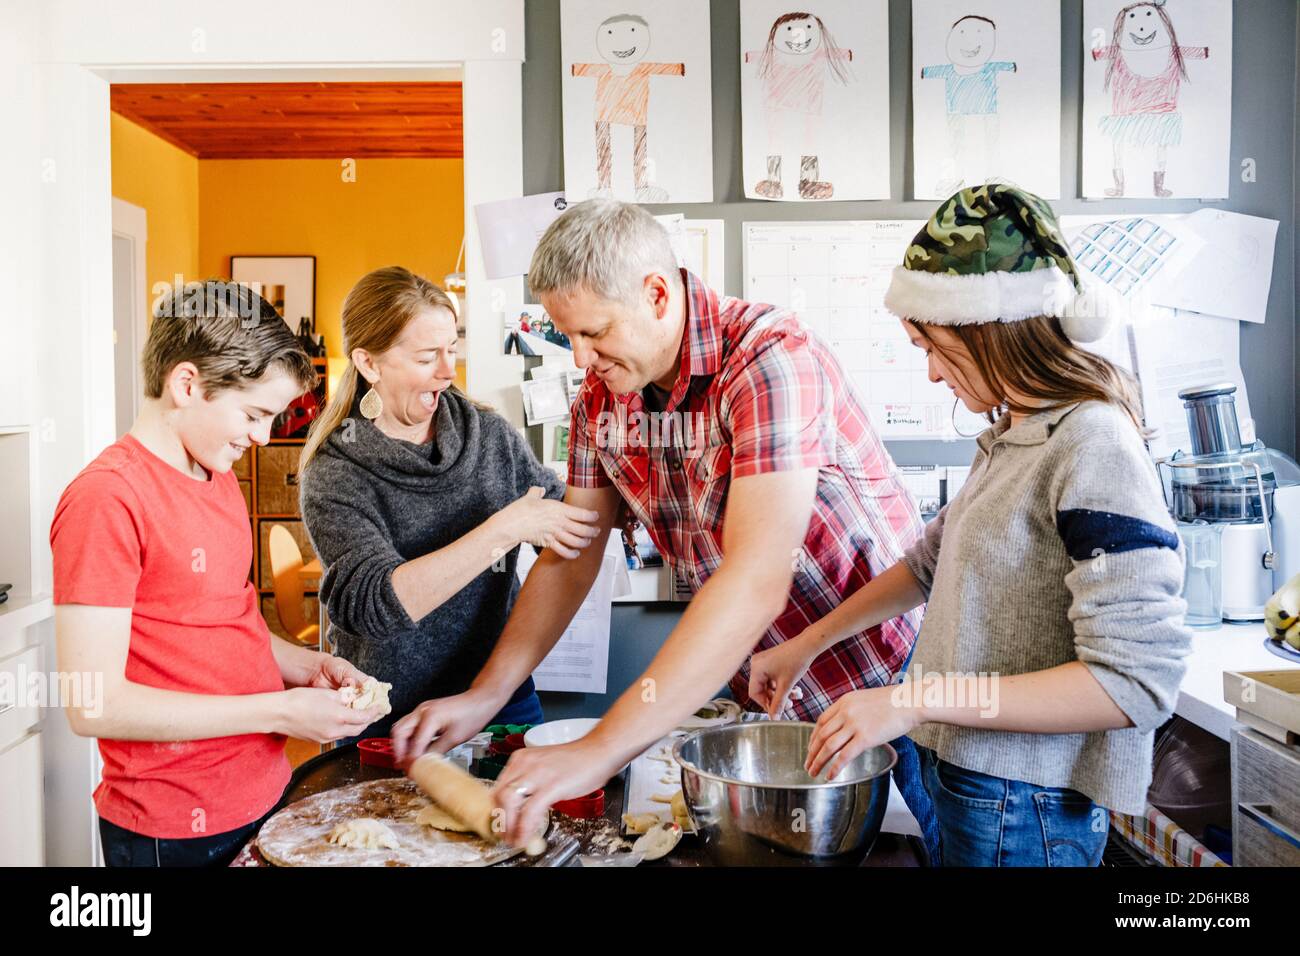 Spaß Zeit Familie von vier Kochen und Spielen in der Küche Beim Backen  Stockfotografie - Alamy